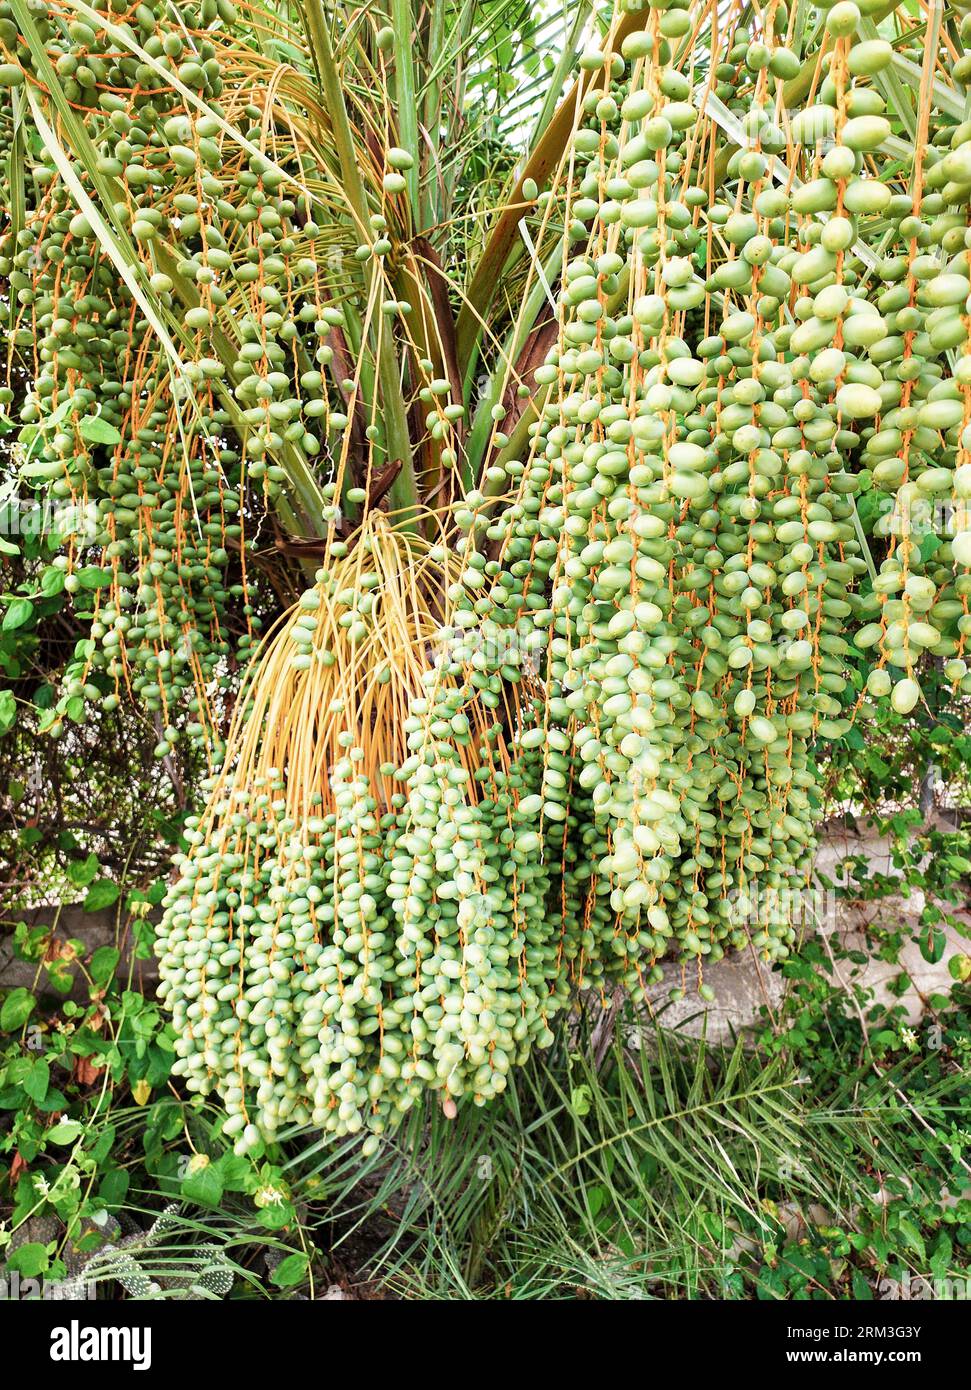 Les dattes biologiques du palmier espagnol commencent à mûrir en été. Banque D'Images